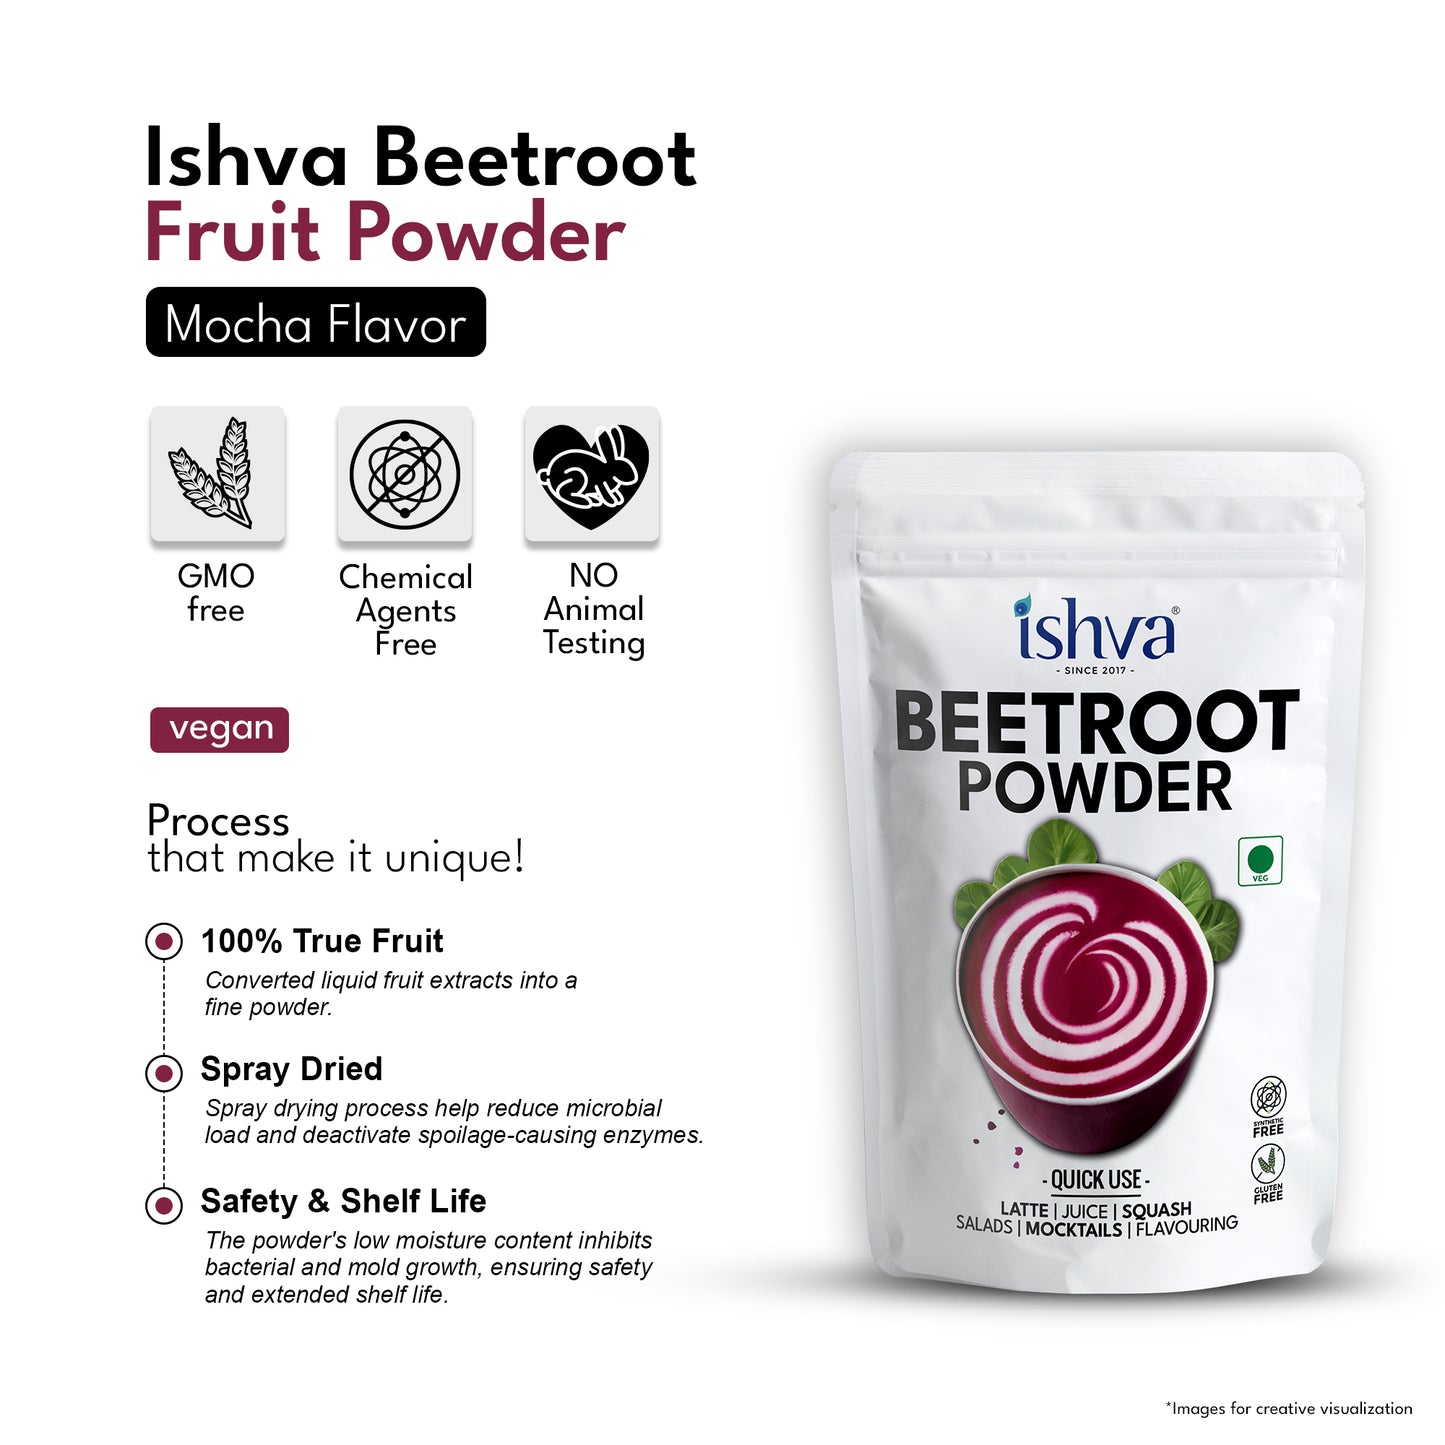 Ishva Beetroot Powder - Flavor for Mocha